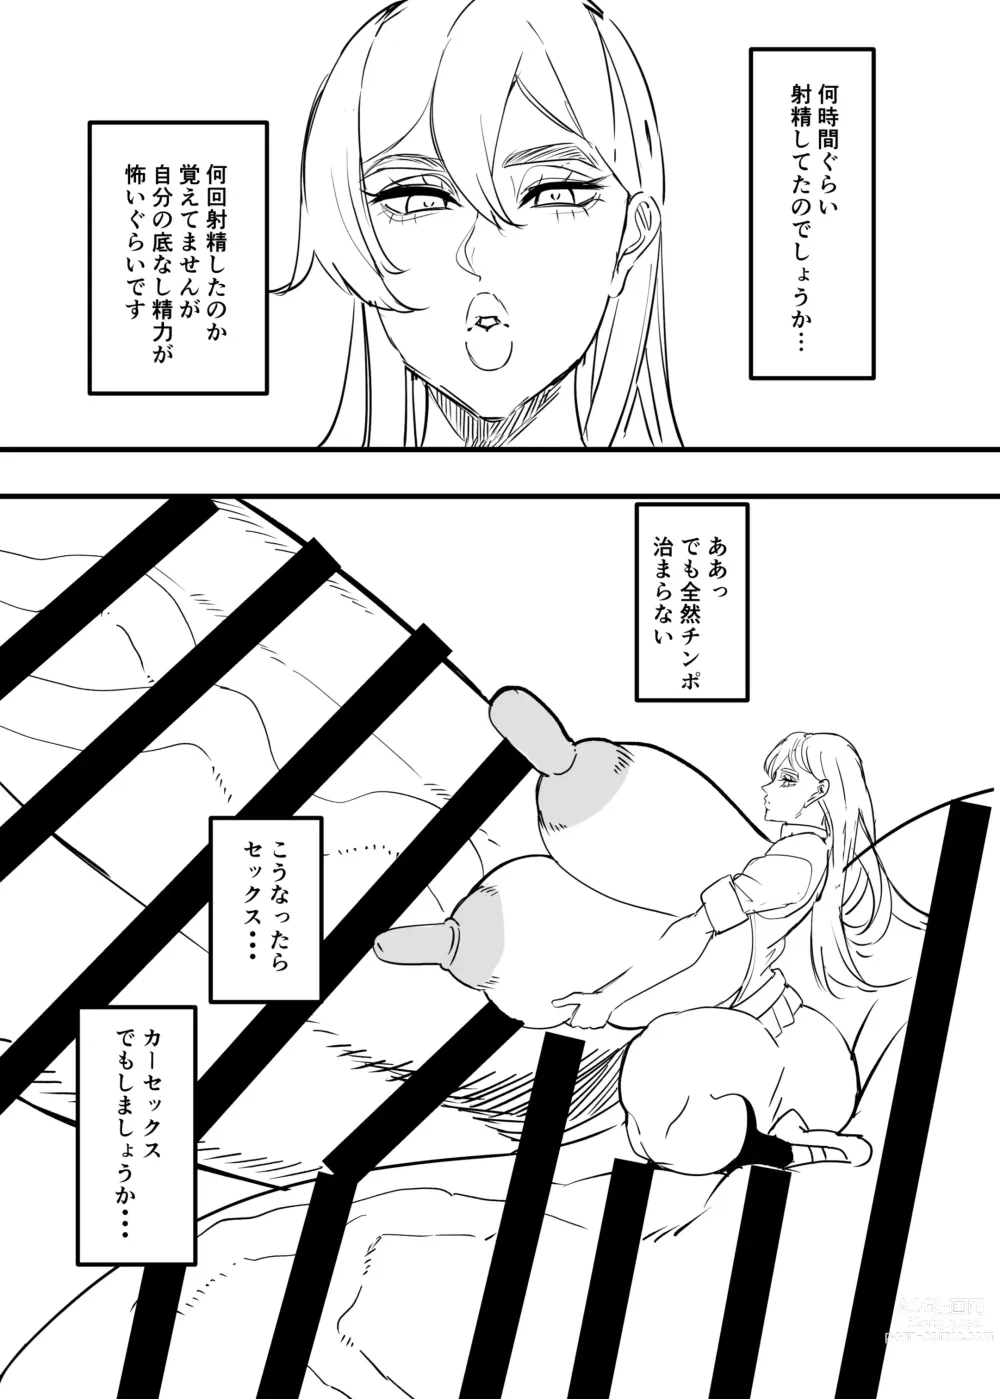 Page 7 of doujinshi Dekai futanari hon